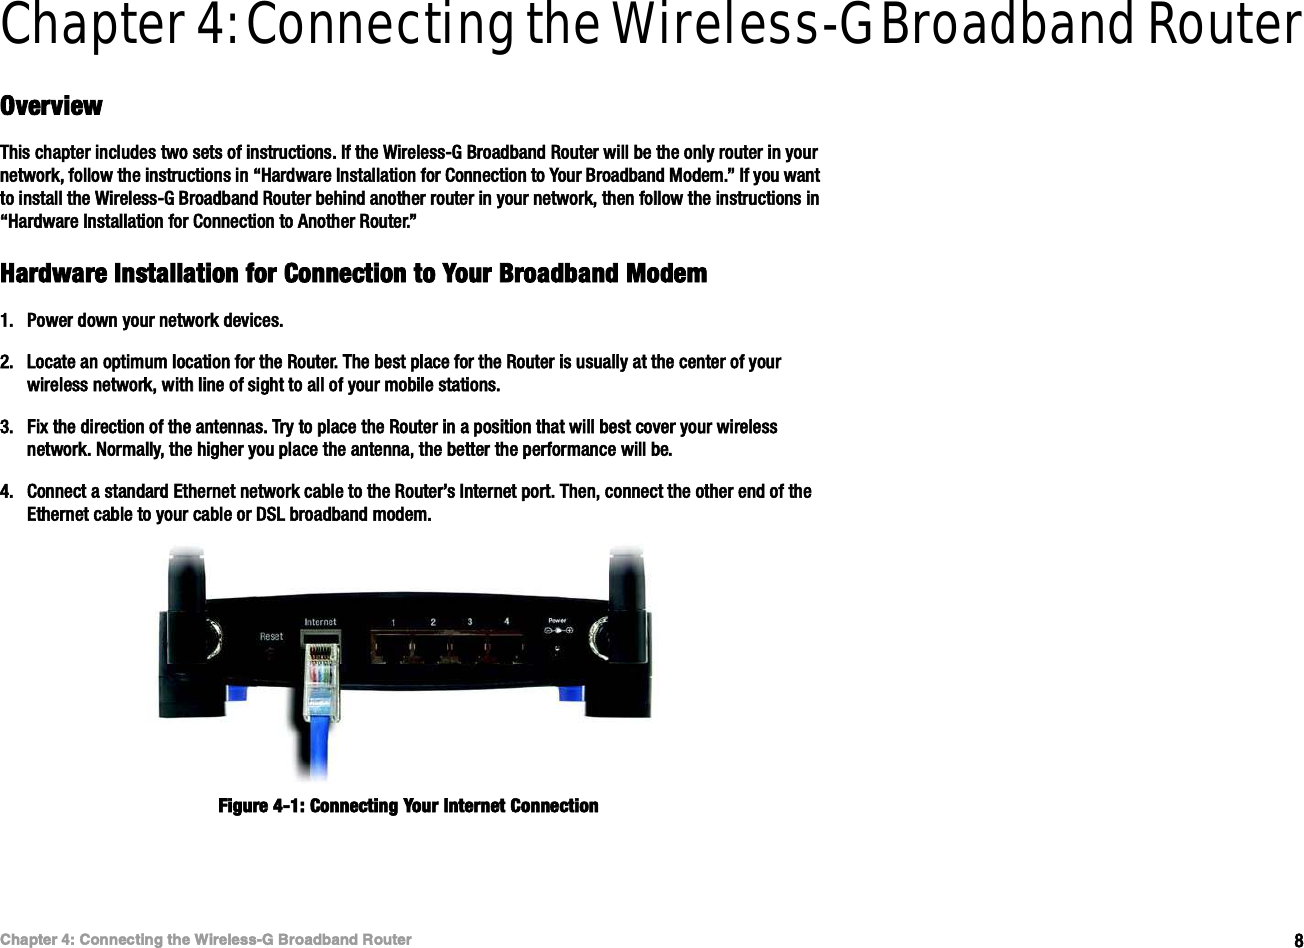 èÝ¸¿°¬»® ìæ Ý±²²»½¬·²¹ ¬¸» É·®»´»--óÙ Þ®±¿¼¾¿²¼ Î±«¬»®Ñª»®ª·»©É·®»´»--óÙ Þ®±¿¼¾¿²¼ Î±«¬»®Chapter 4: Connecting the Wireless-G Broadband RouterÑª»®ª·»©Ì¸·- ½¸¿°¬»® ·²½´«¼»- ¬©± -»¬- ±º ·²-¬®«½¬·±²-ò ×º ¬¸» É·®»´»--óÙ Þ®±¿¼¾¿²¼ Î±«¬»® ©·´´ ¾» ¬¸» ±²´§ ®±«¬»® ·² §±«® ²»¬©±®µô º±´´±© ¬¸» ·²-¬®«½¬·±²- ·² •Ø¿®¼©¿®» ×²-¬¿´´¿¬·±² º±® Ý±²²»½¬·±² ¬± Ç±«® Þ®±¿¼¾¿²¼ Ó±¼»³òŒ ×º §±« ©¿²¬ ¬± ·²-¬¿´´ ¬¸» É·®»´»--óÙ Þ®±¿¼¾¿²¼ Î±«¬»® ¾»¸·²¼ ¿²±¬¸»® ®±«¬»® ·² §±«® ²»¬©±®µô ¬¸»² º±´´±© ¬¸» ·²-¬®«½¬·±²- ·² •Ø¿®¼©¿®» ×²-¬¿´´¿¬·±² º±® Ý±²²»½¬·±² ¬± ß²±¬¸»® Î±«¬»®òŒØ¿®¼©¿®» ×²-¬¿´´¿¬·±² º±® Ý±²²»½¬·±² ¬± Ç±«® Þ®±¿¼¾¿²¼ Ó±¼»³ïòÐ±©»® ¼±©² §±«® ²»¬©±®µ ¼»ª·½»-òîòÔ±½¿¬» ¿² ±°¬·³«³ ´±½¿¬·±² º±® ¬¸» Î±«¬»®ò Ì¸» ¾»-¬ °´¿½» º±® ¬¸» Î±«¬»® ·- «-«¿´´§ ¿¬ ¬¸» ½»²¬»® ±º §±«® ©·®»´»-- ²»¬©±®µô ©·¬¸ ´·²» ±º -·¹¸¬ ¬± ¿´´ ±º §±«® ³±¾·´» -¬¿¬·±²-òíòÚ·¨ ¬¸» ¼·®»½¬·±² ±º ¬¸» ¿²¬»²²¿-ò Ì®§ ¬± °´¿½» ¬¸» Î±«¬»® ·² ¿ °±-·¬·±² ¬¸¿¬ ©·´´ ¾»-¬ ½±ª»® §±«® ©·®»´»-- ²»¬©±®µò Ò±®³¿´´§ô ¬¸» ¸·¹¸»® §±« °´¿½» ¬¸» ¿²¬»²²¿ô ¬¸» ¾»¬¬»® ¬¸» °»®º±®³¿²½» ©·´´ ¾»òìòÝ±²²»½¬ ¿ -¬¿²¼¿®¼ Û¬¸»®²»¬ ²»¬©±®µ ½¿¾´» ¬± ¬¸» Î±«¬»®Ž- ×²¬»®²»¬ °±®¬ò Ì¸»²ô ½±²²»½¬ ¬¸» ±¬¸»® »²¼ ±º ¬¸» Û¬¸»®²»¬ ½¿¾´» ¬± §±«® ½¿¾´» ±® ÜÍÔ ¾®±¿¼¾¿²¼ ³±¼»³òÚ·¹«®» ìóïæ Ý±²²»½¬·²¹ Ç±«® ×²¬»®²»¬ Ý±²²»½¬·±²